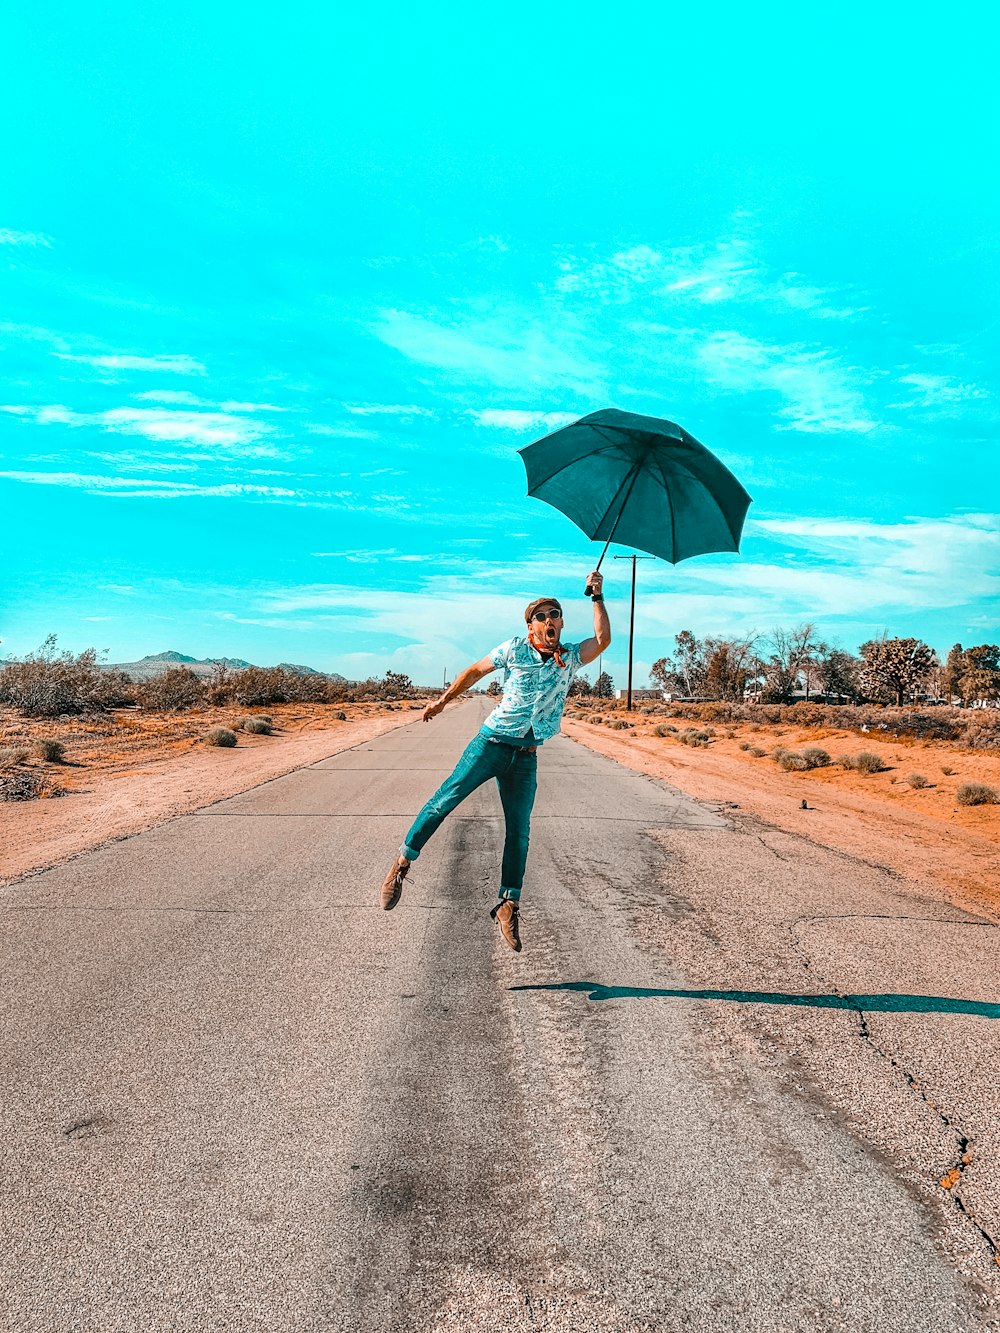 청록색 긴 소매 셔츠와 파란색 데님 청바지를 입은 여자가 우산을 들고 도로를 걷고 있다